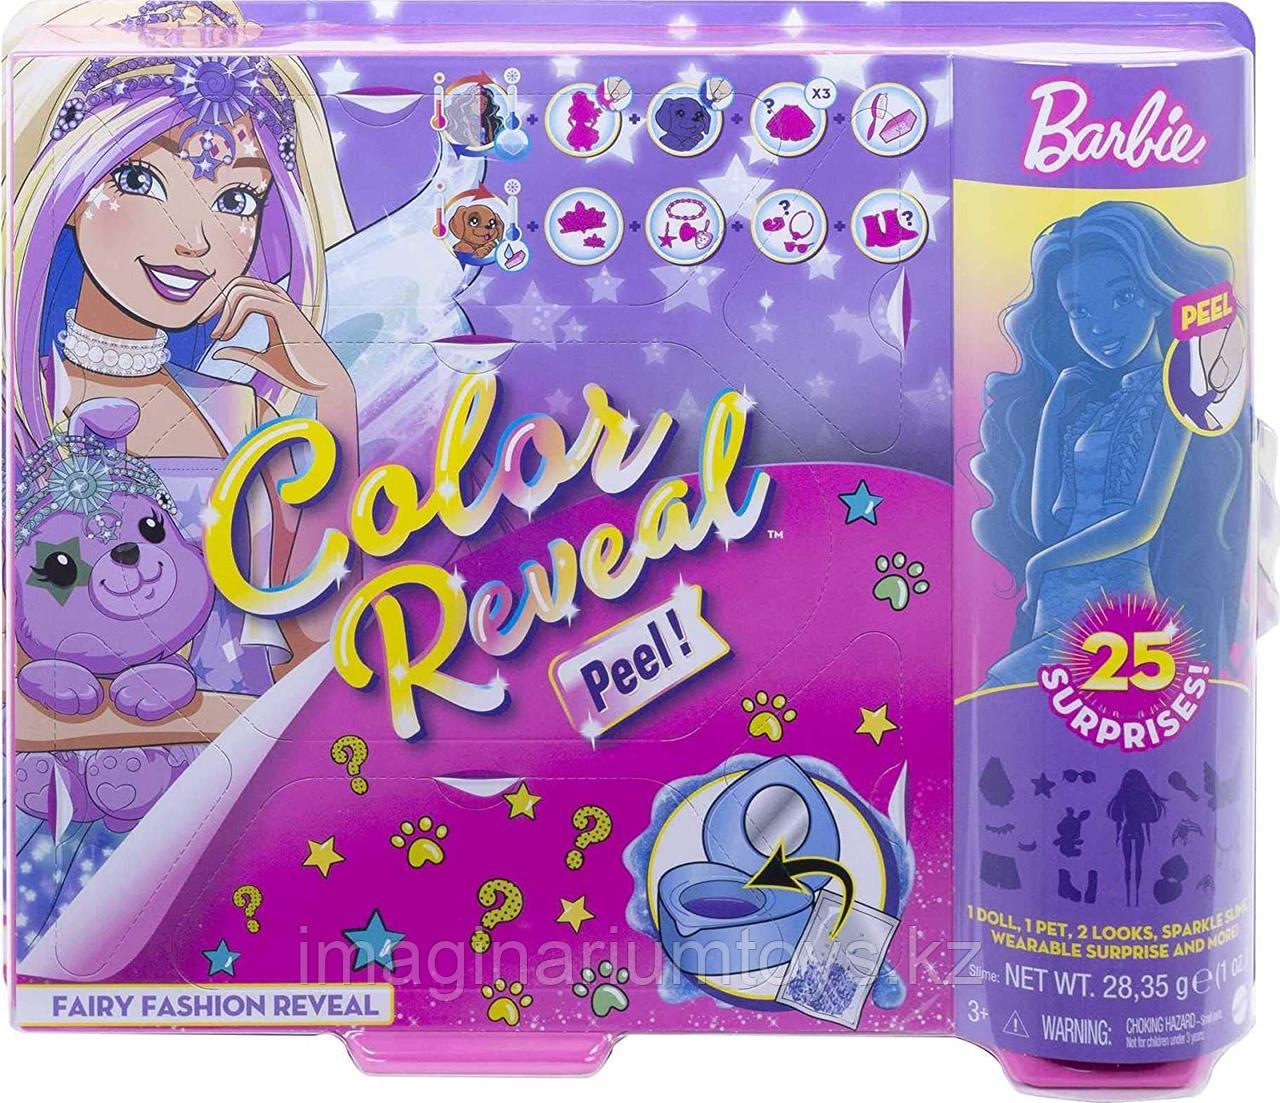 Кукла Barbie Color Reveal Peel игровой набор 25 сюрпризов Фея, фото 1